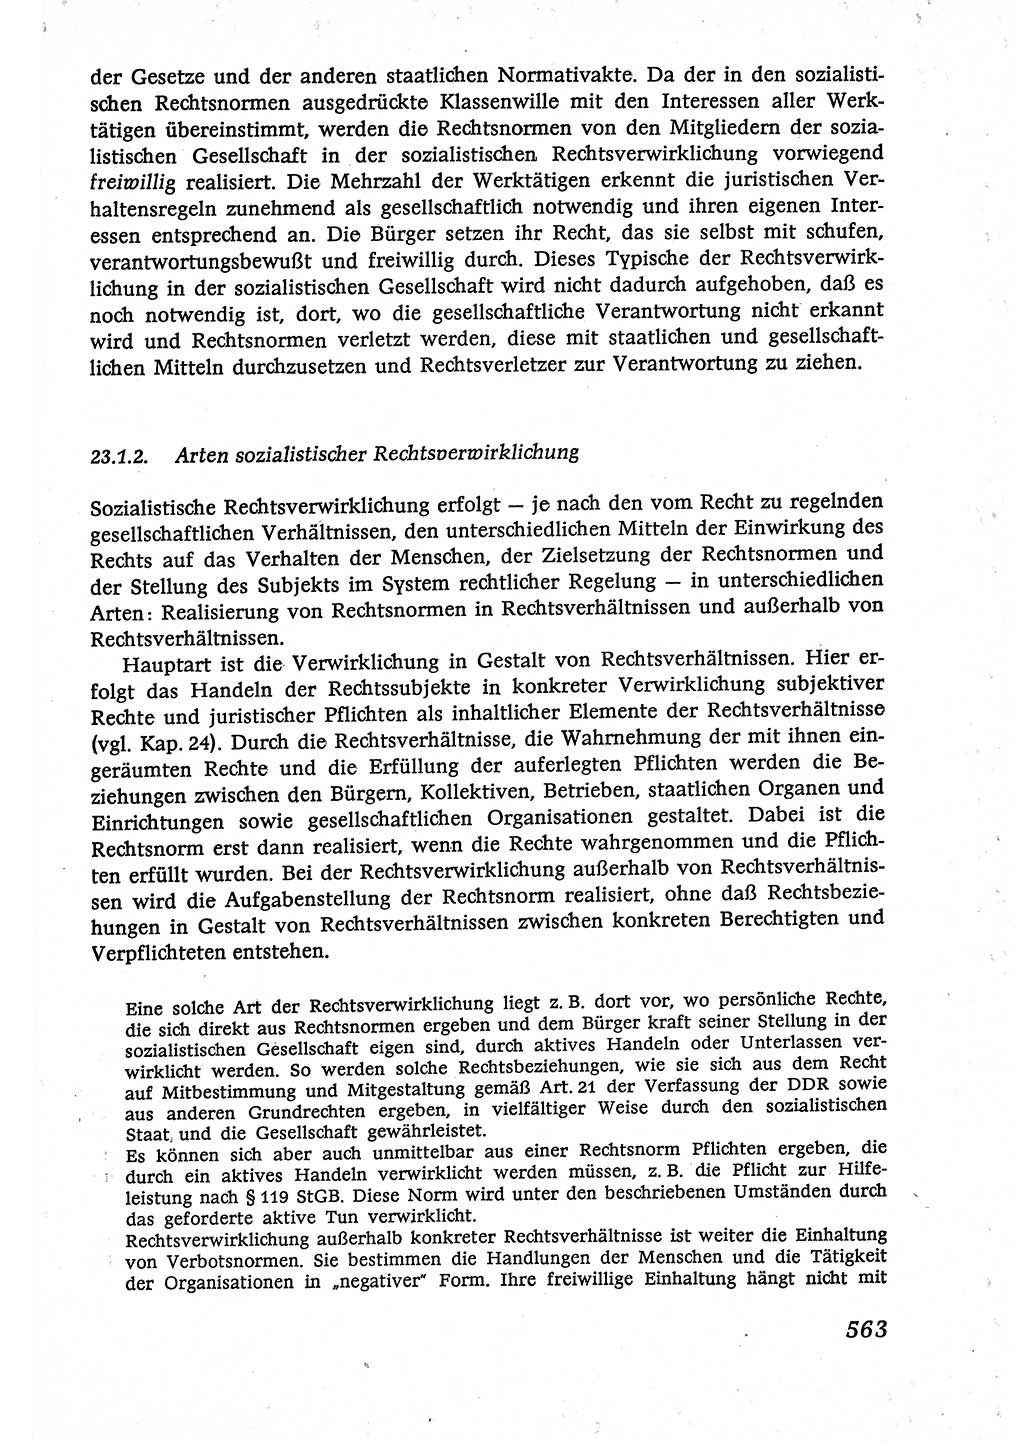 Marxistisch-leninistische (ML) Staats- und Rechtstheorie [Deutsche Demokratische Republik (DDR)], Lehrbuch 1980, Seite 563 (ML St.-R.-Th. DDR Lb. 1980, S. 563)